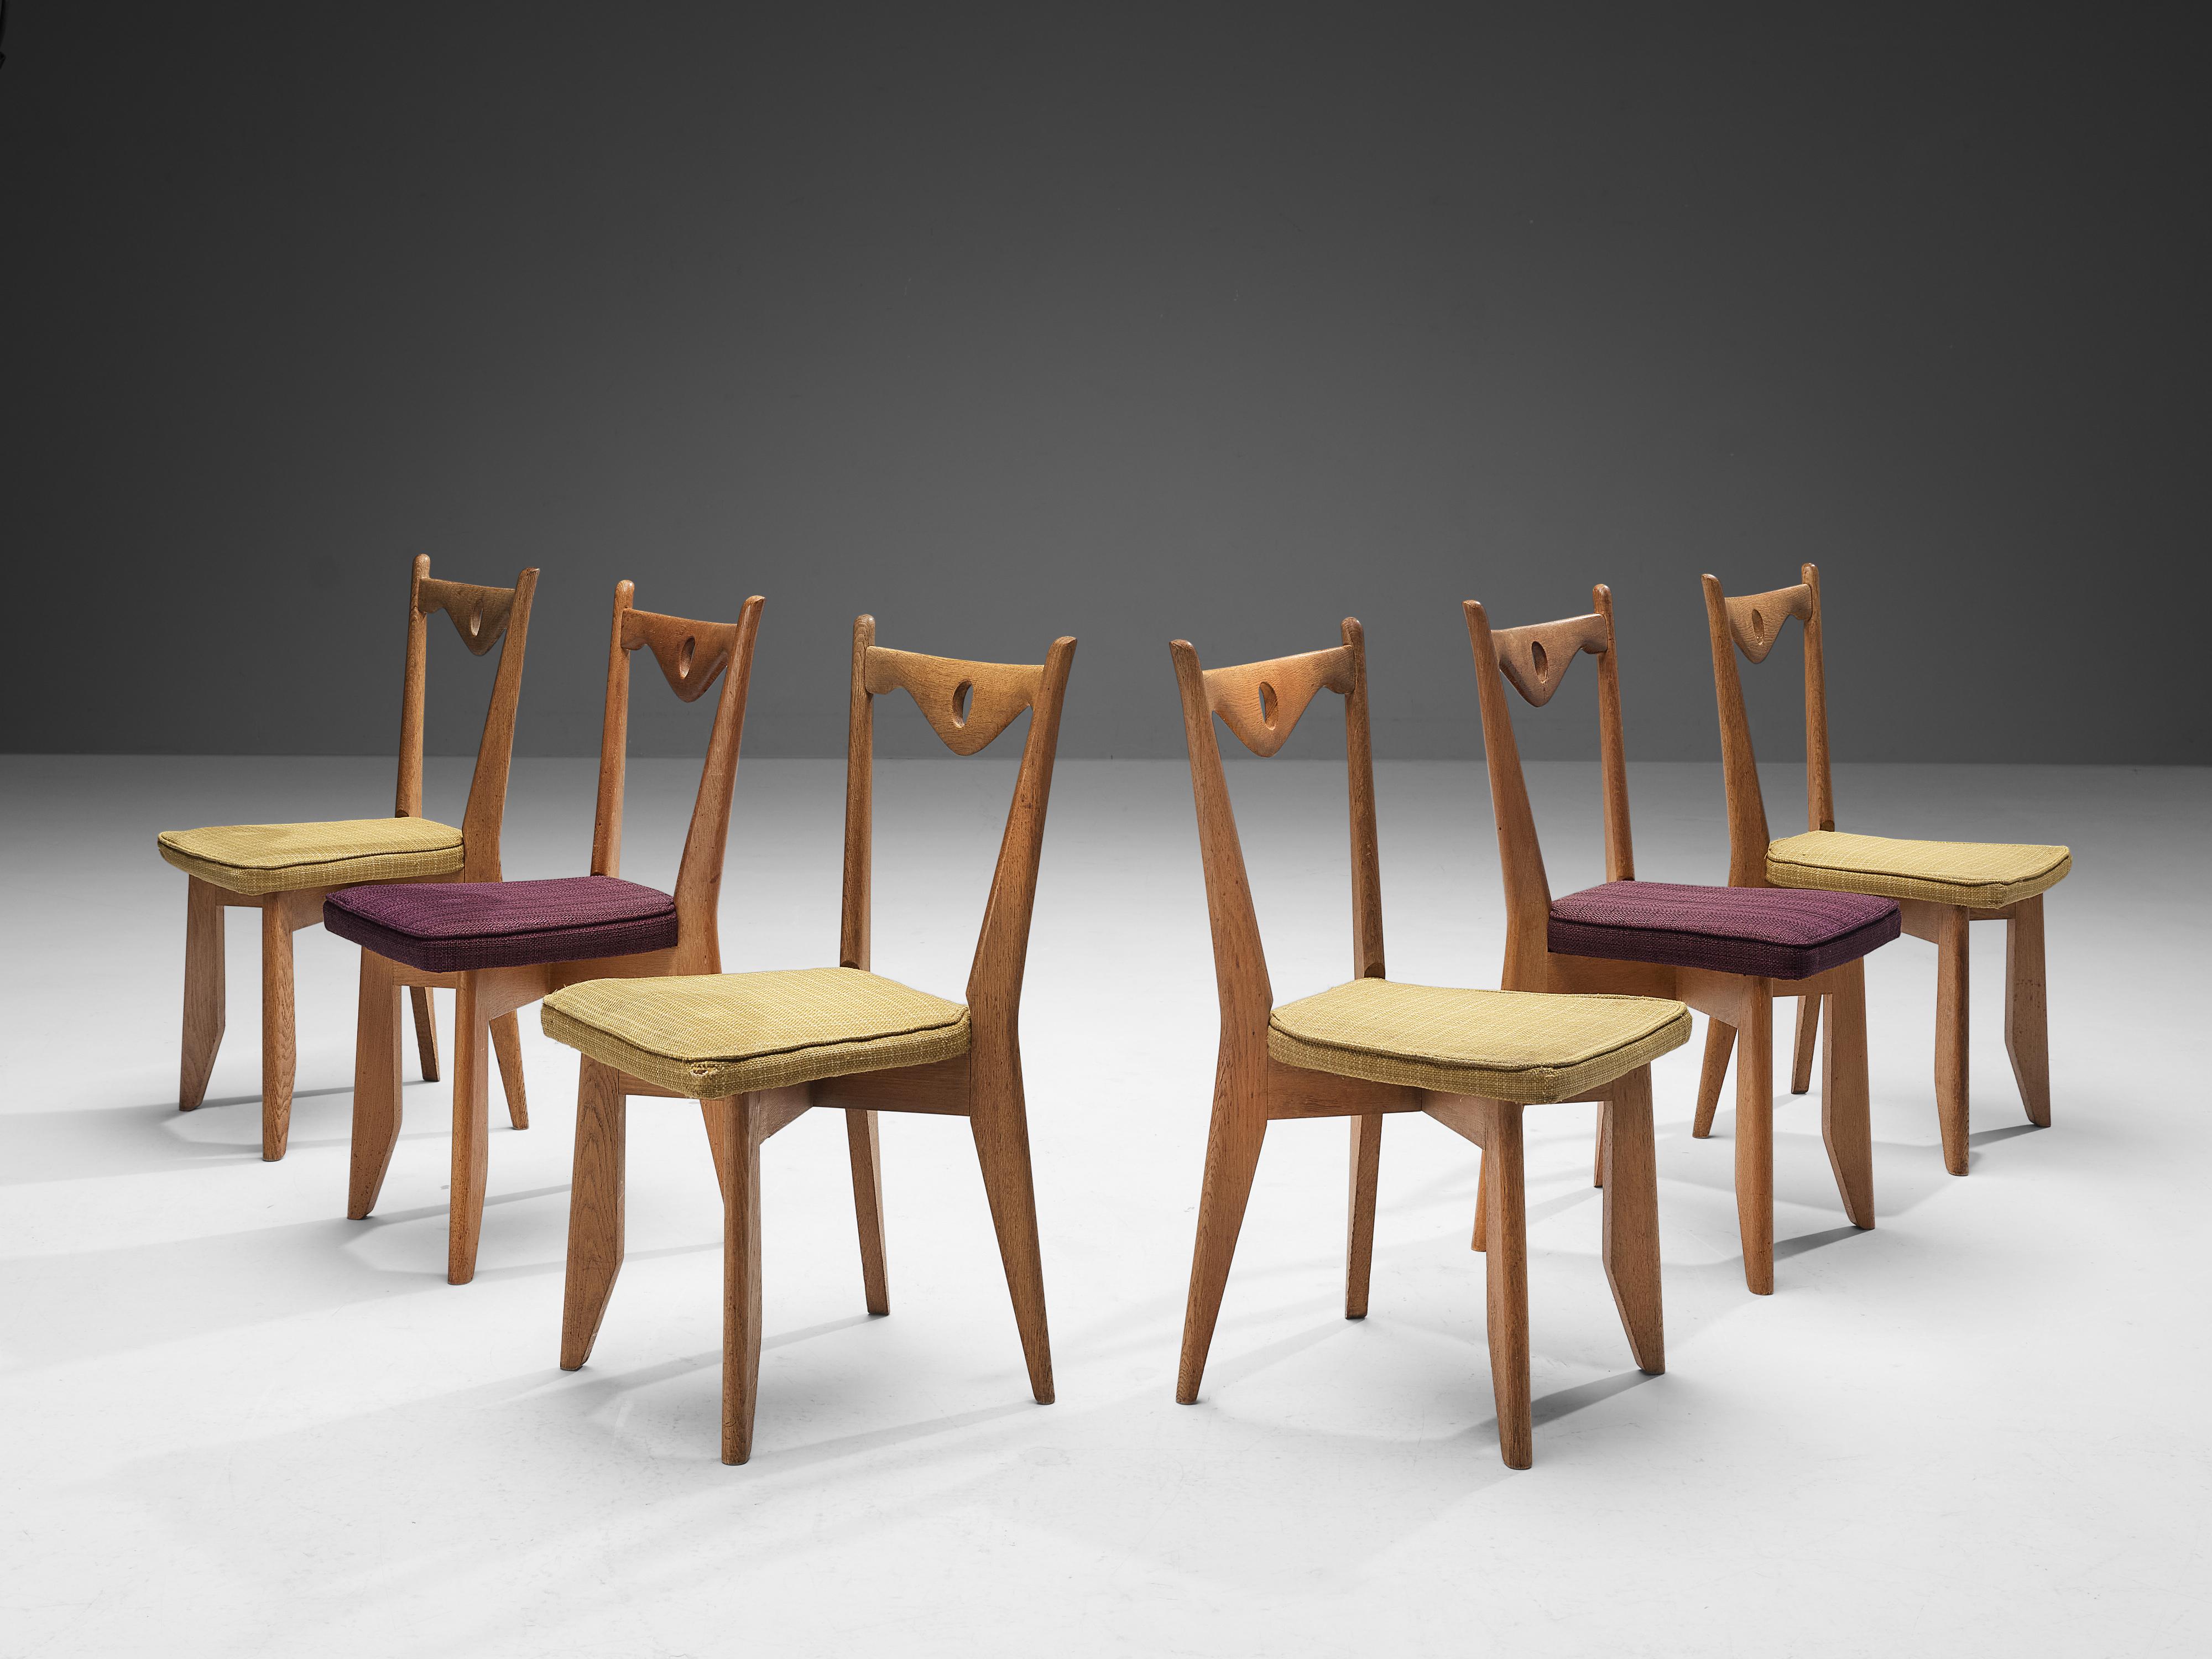 Guillerme et Chambron pour Votre Maison, ensemble de six chaises de salle à manger, chêne, tissu, France, années 1960.

Ces chaises ont des cadres caractéristiques avec des pieds effilés et un dossier sculptural avec un dossier en pointe orienté